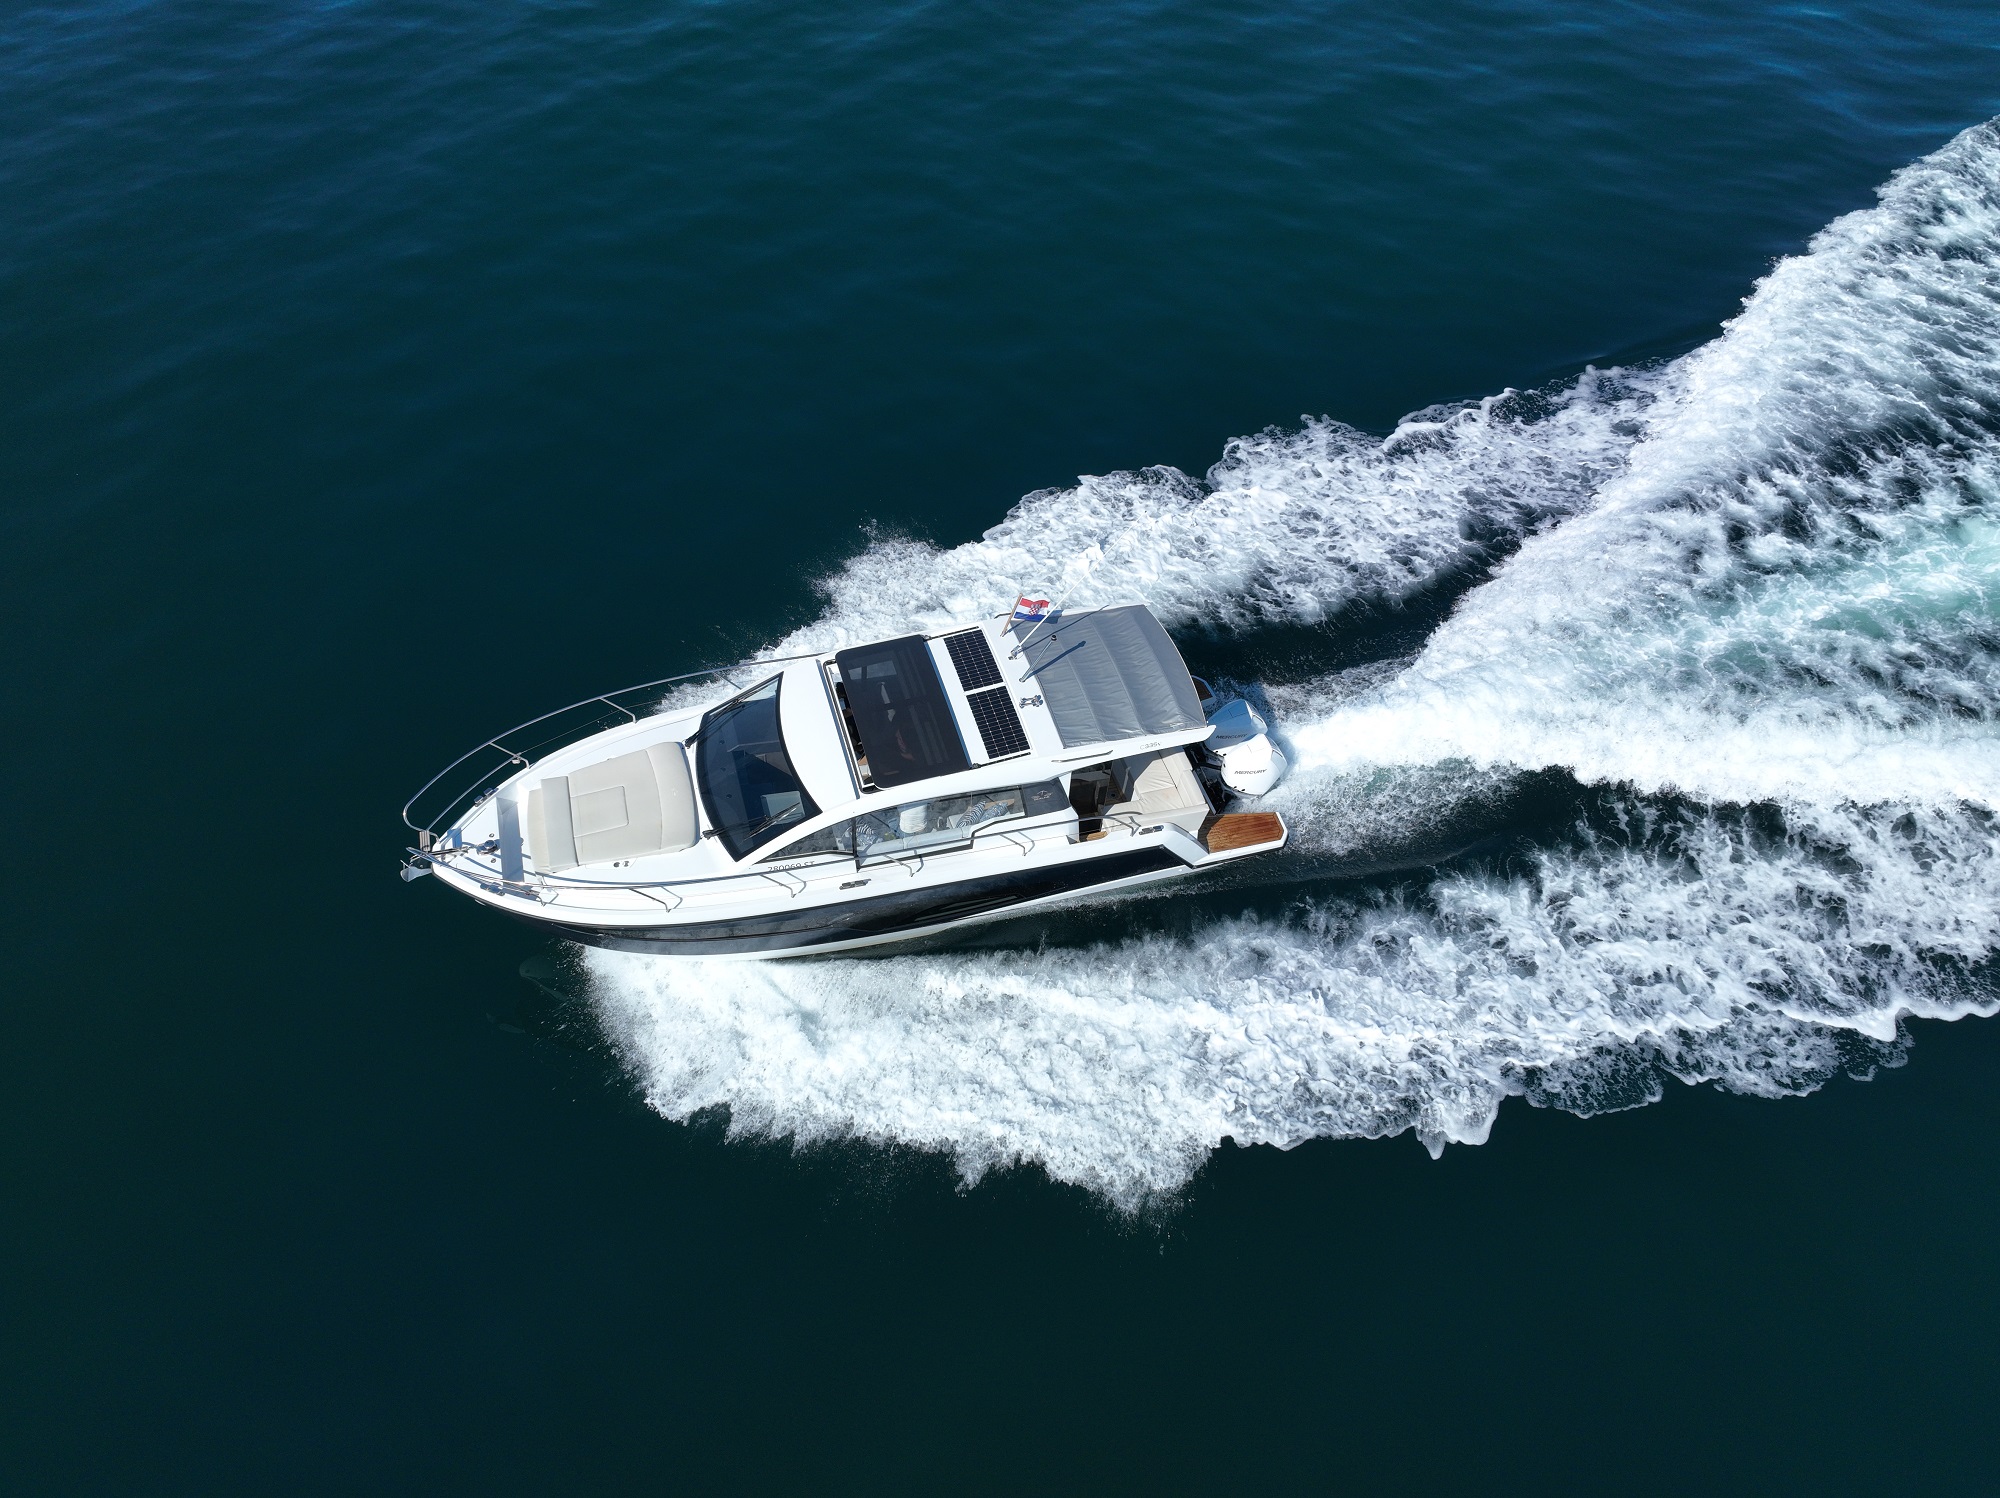 Motorni čoln Sealine C335V Split regija, Hrvaška 6